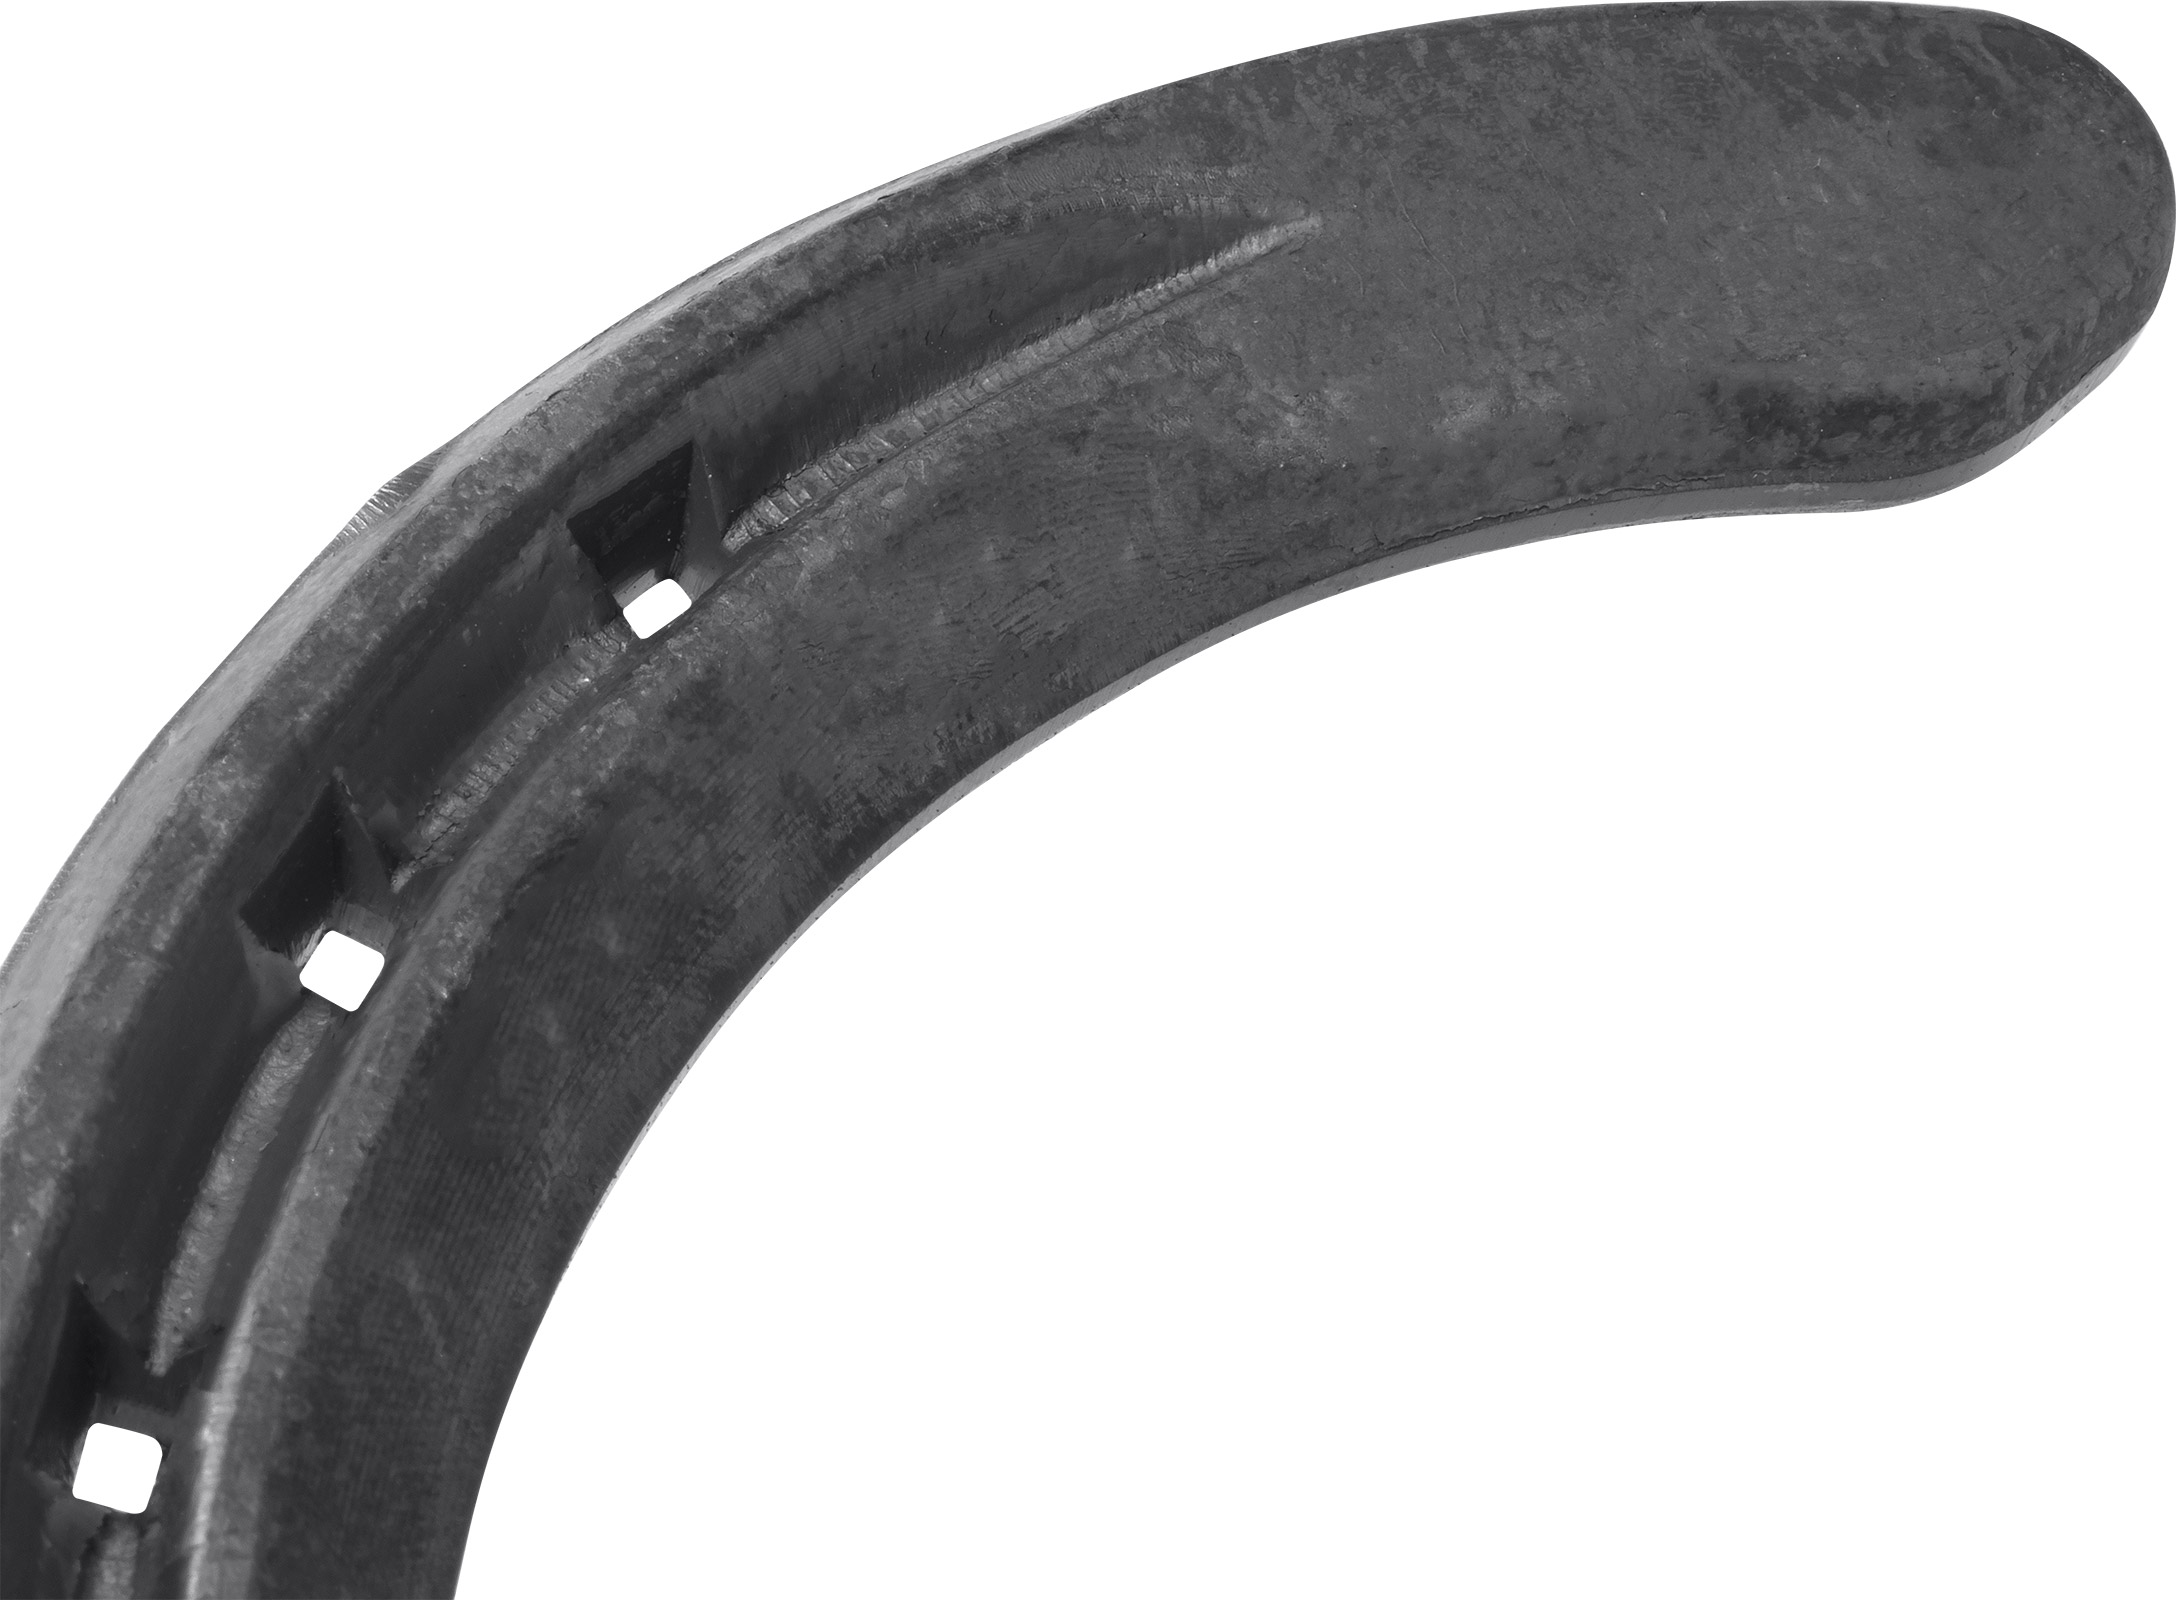 St. Croix Advantage Steel horseshoe, detail